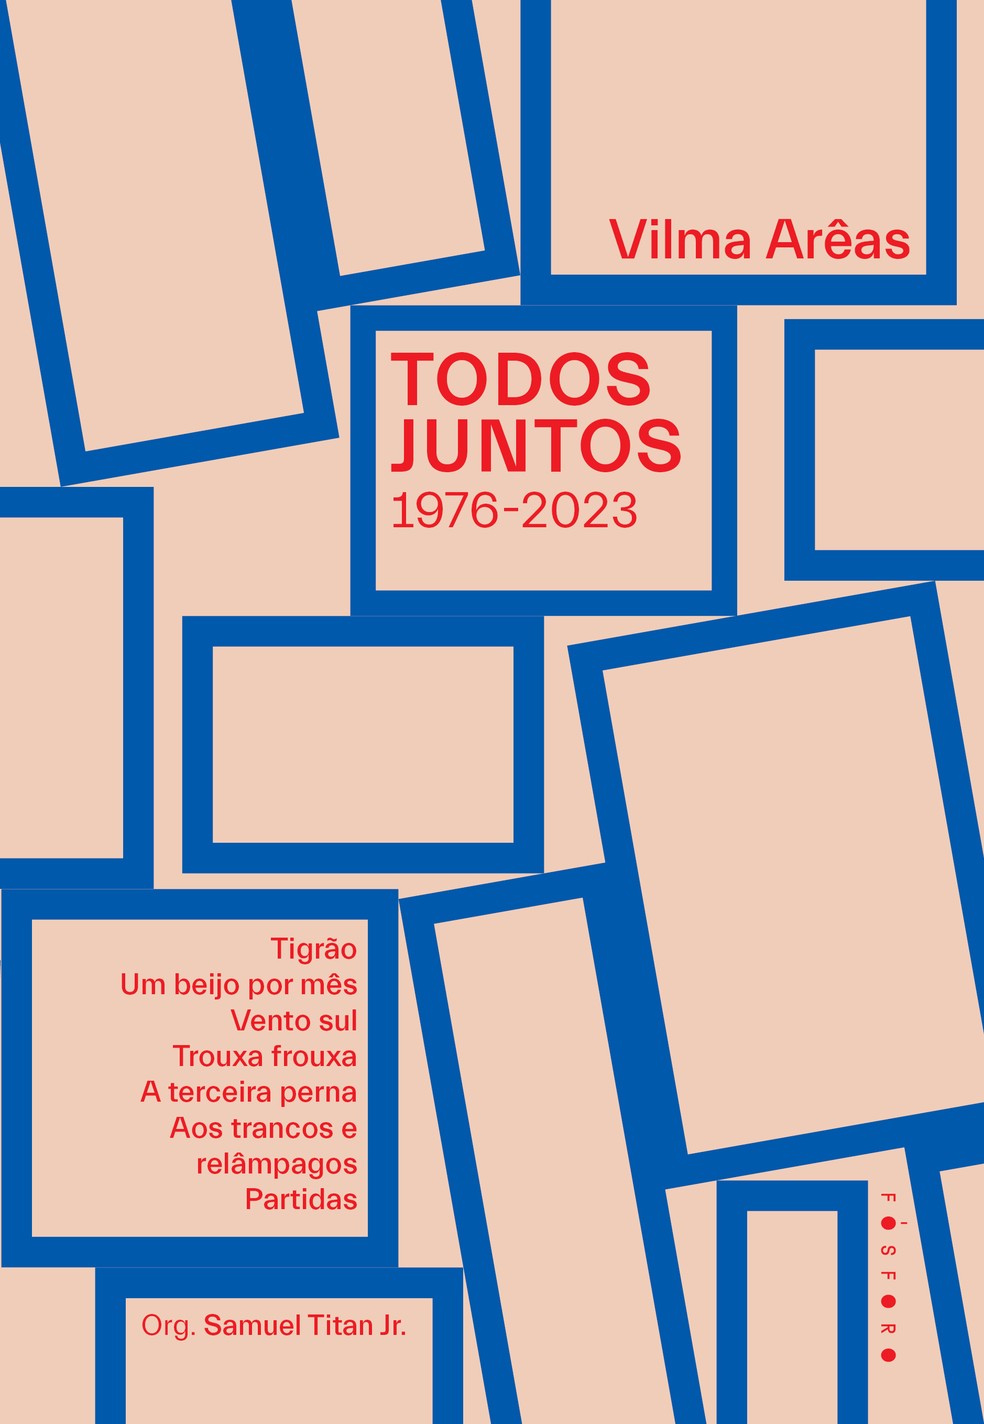 Capa de "Todos juntos", reunião da ficção de Vilma Arêas publicada pela Fósforo — Foto: Reprodução